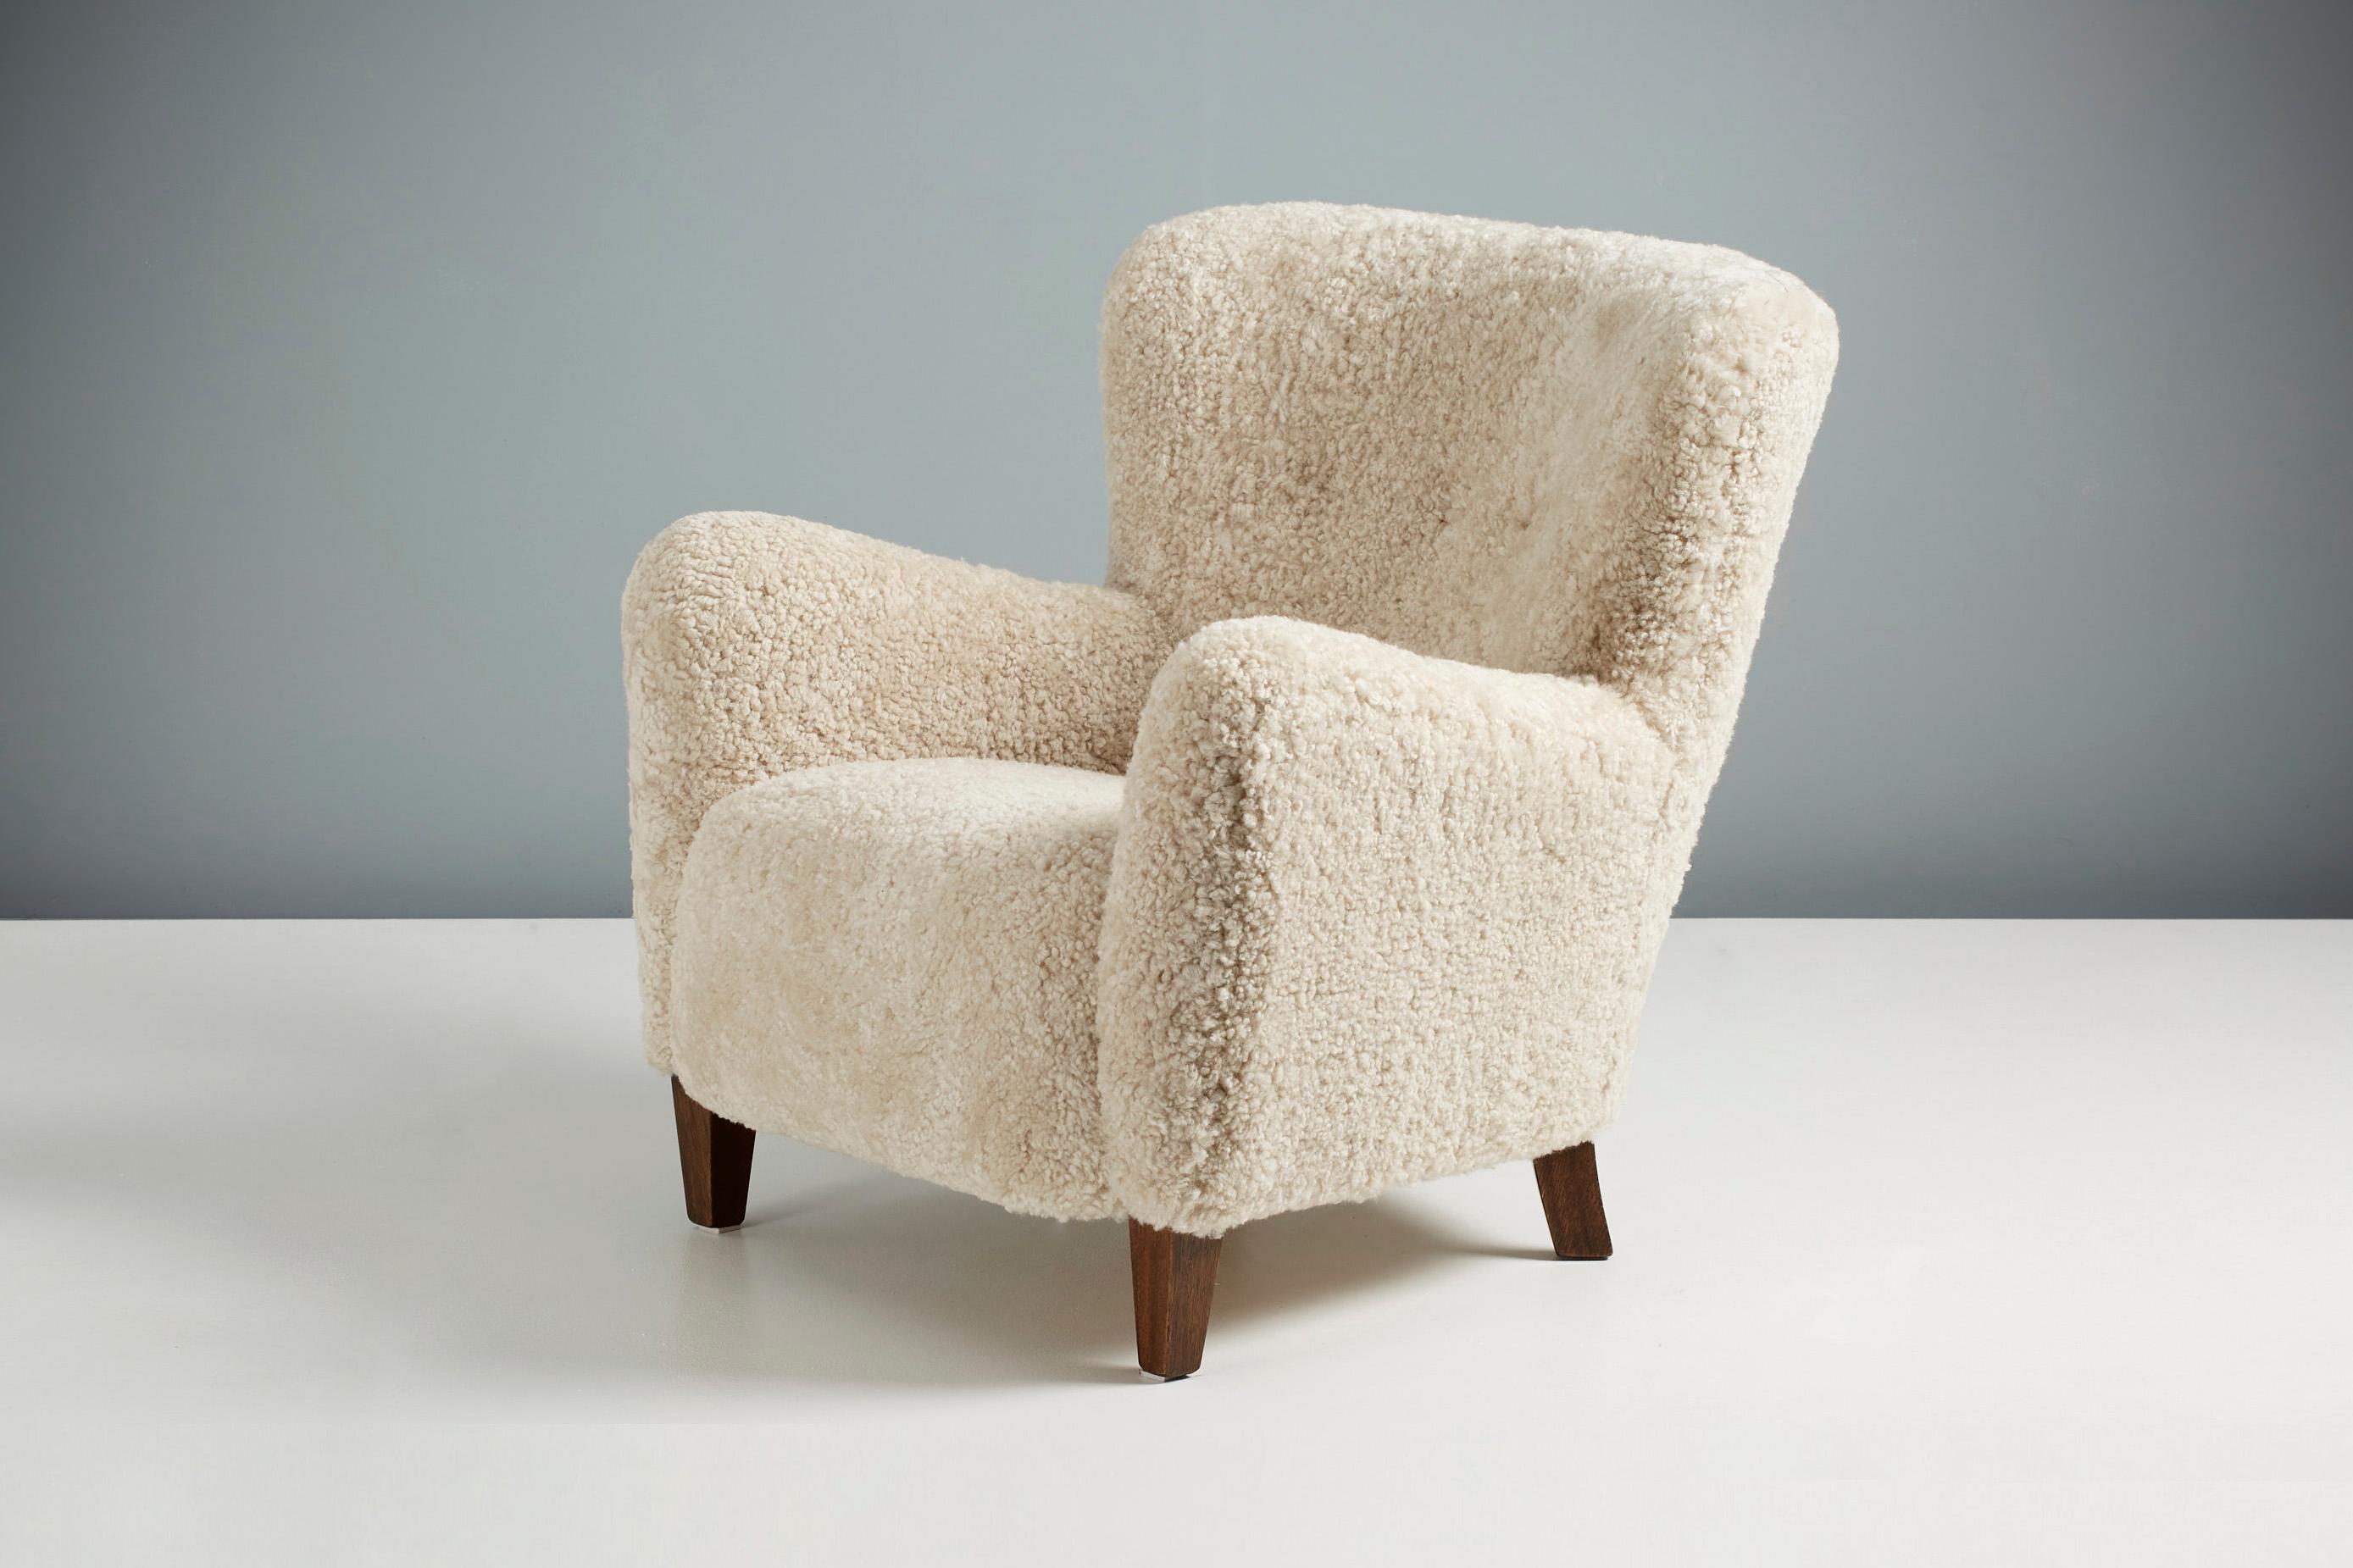 Dagmar Design - Sessel Ryo

Der Loungesessel Ryo gehört zu unserer Serie von Polstermöbeln nach Maß. Dieses Stück wurde in unseren Werkstätten in London entwickelt und von Hand aus den hochwertigsten Materialien hergestellt. Das Gestell ist aus